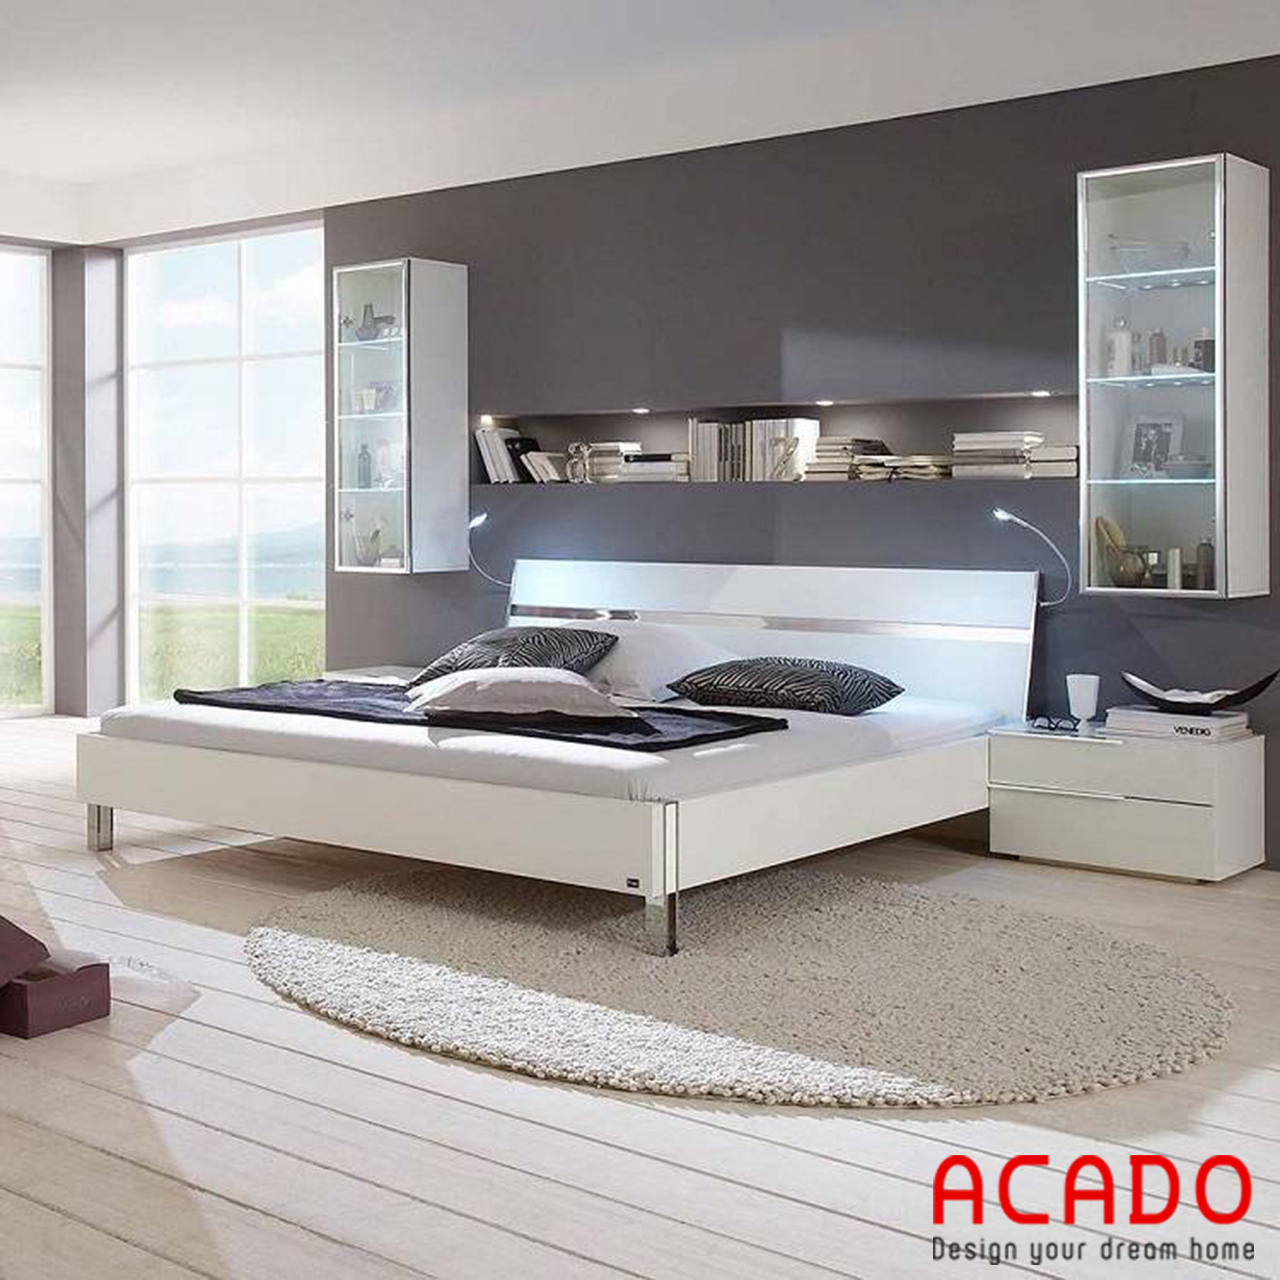 Giường ngủ Acrylic hiện đại - nội thất Acado